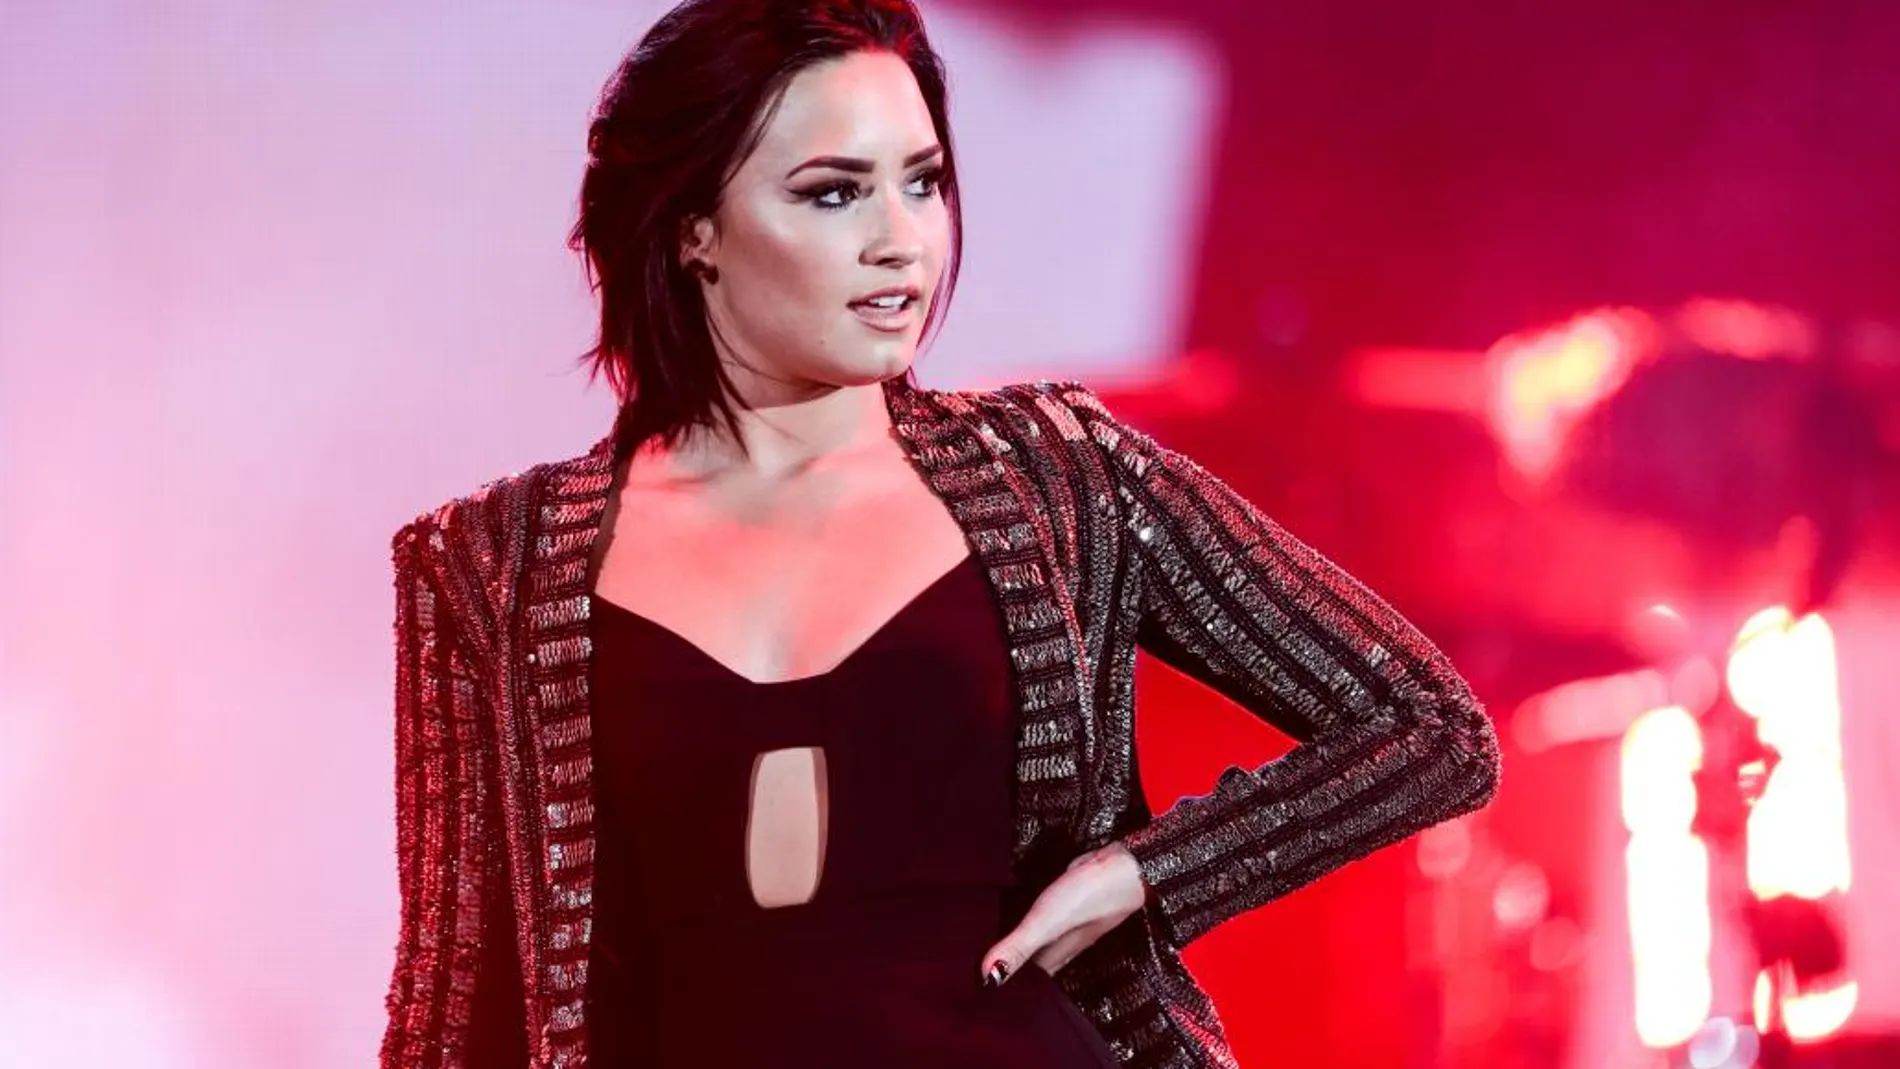 La cantante y actriz estadounidense Demi Lovato